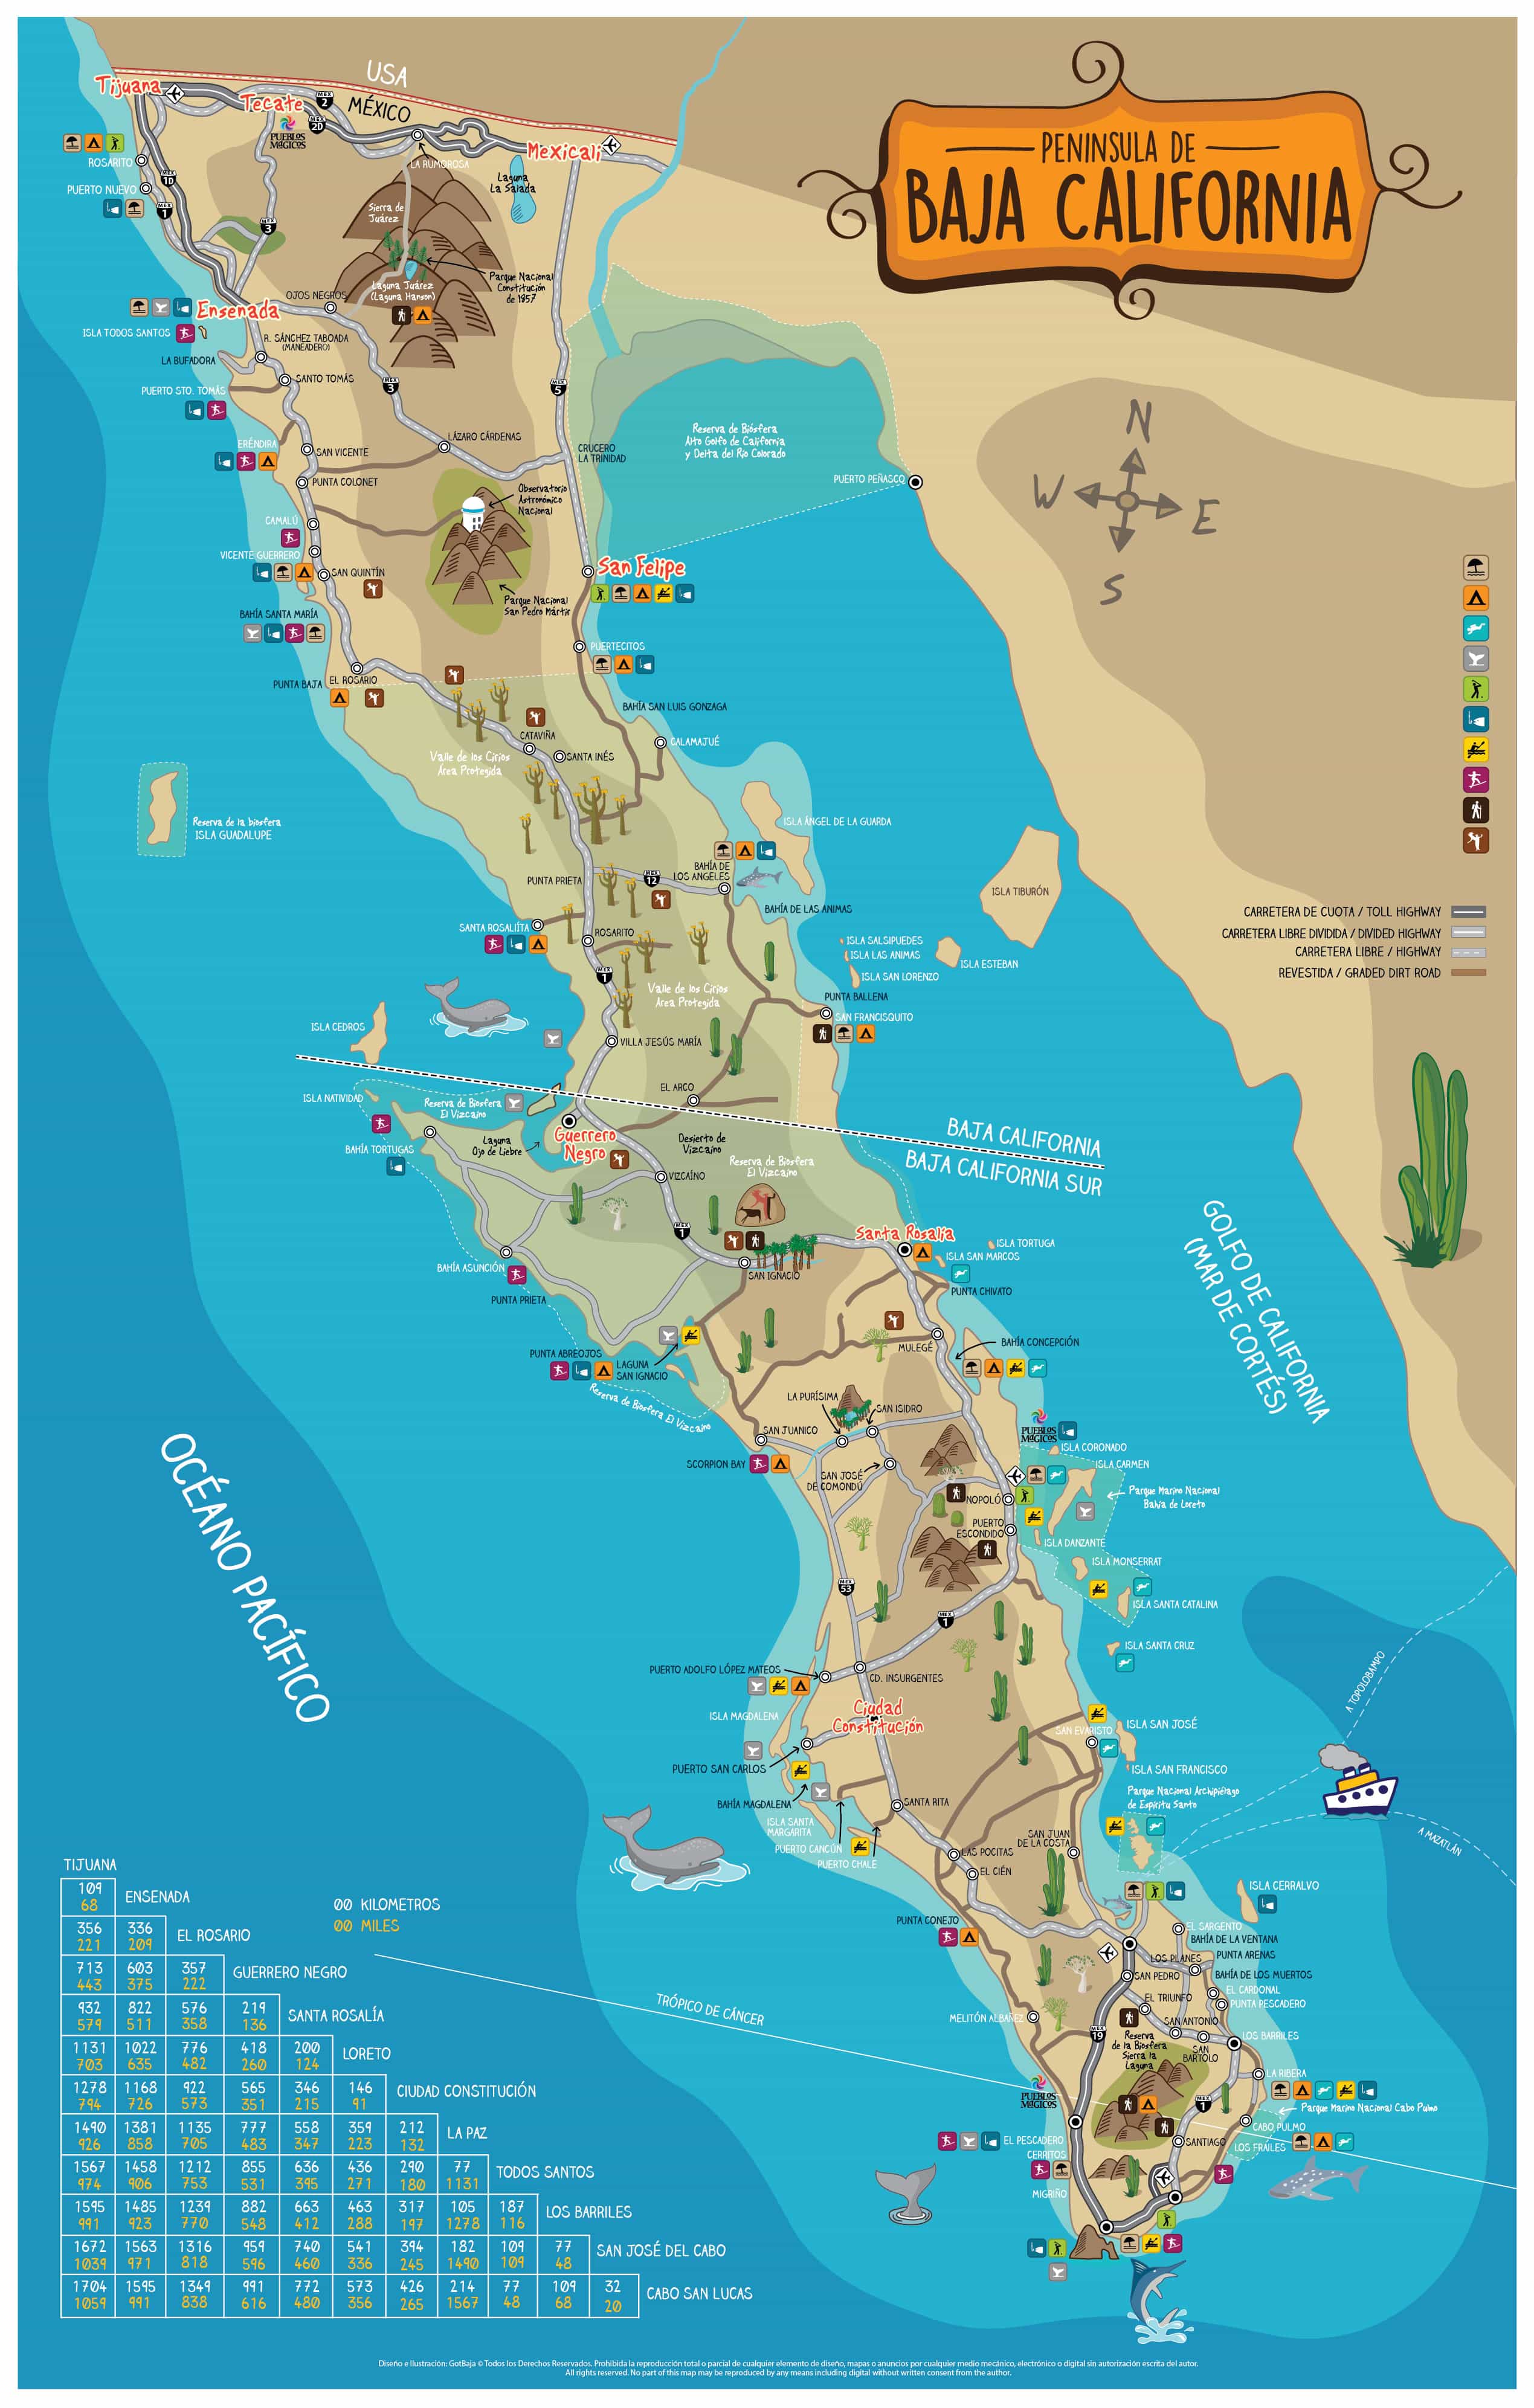 map of baja california